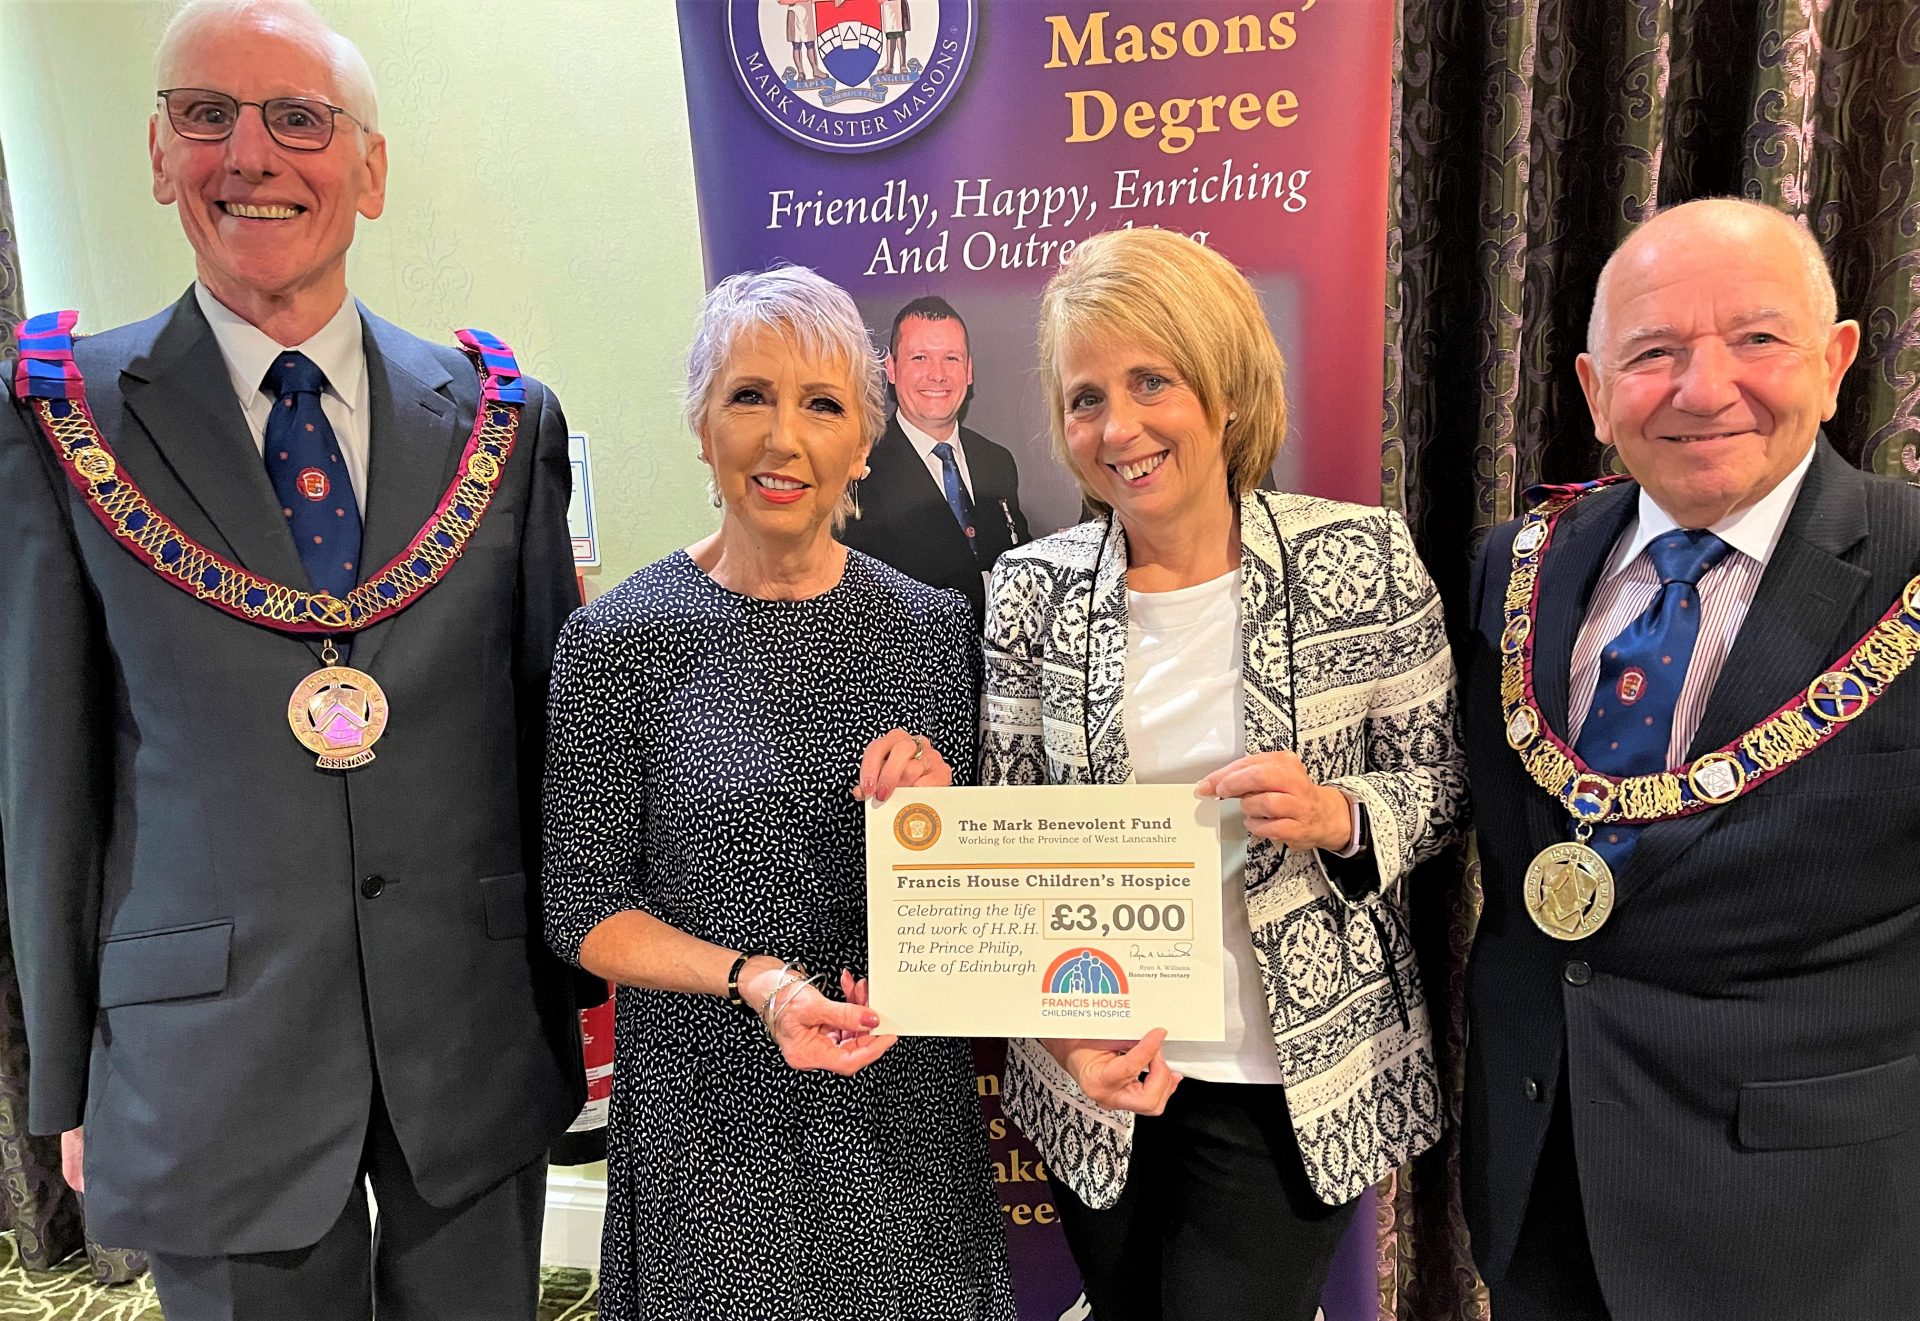 Mark Master Masons donation to Francis House